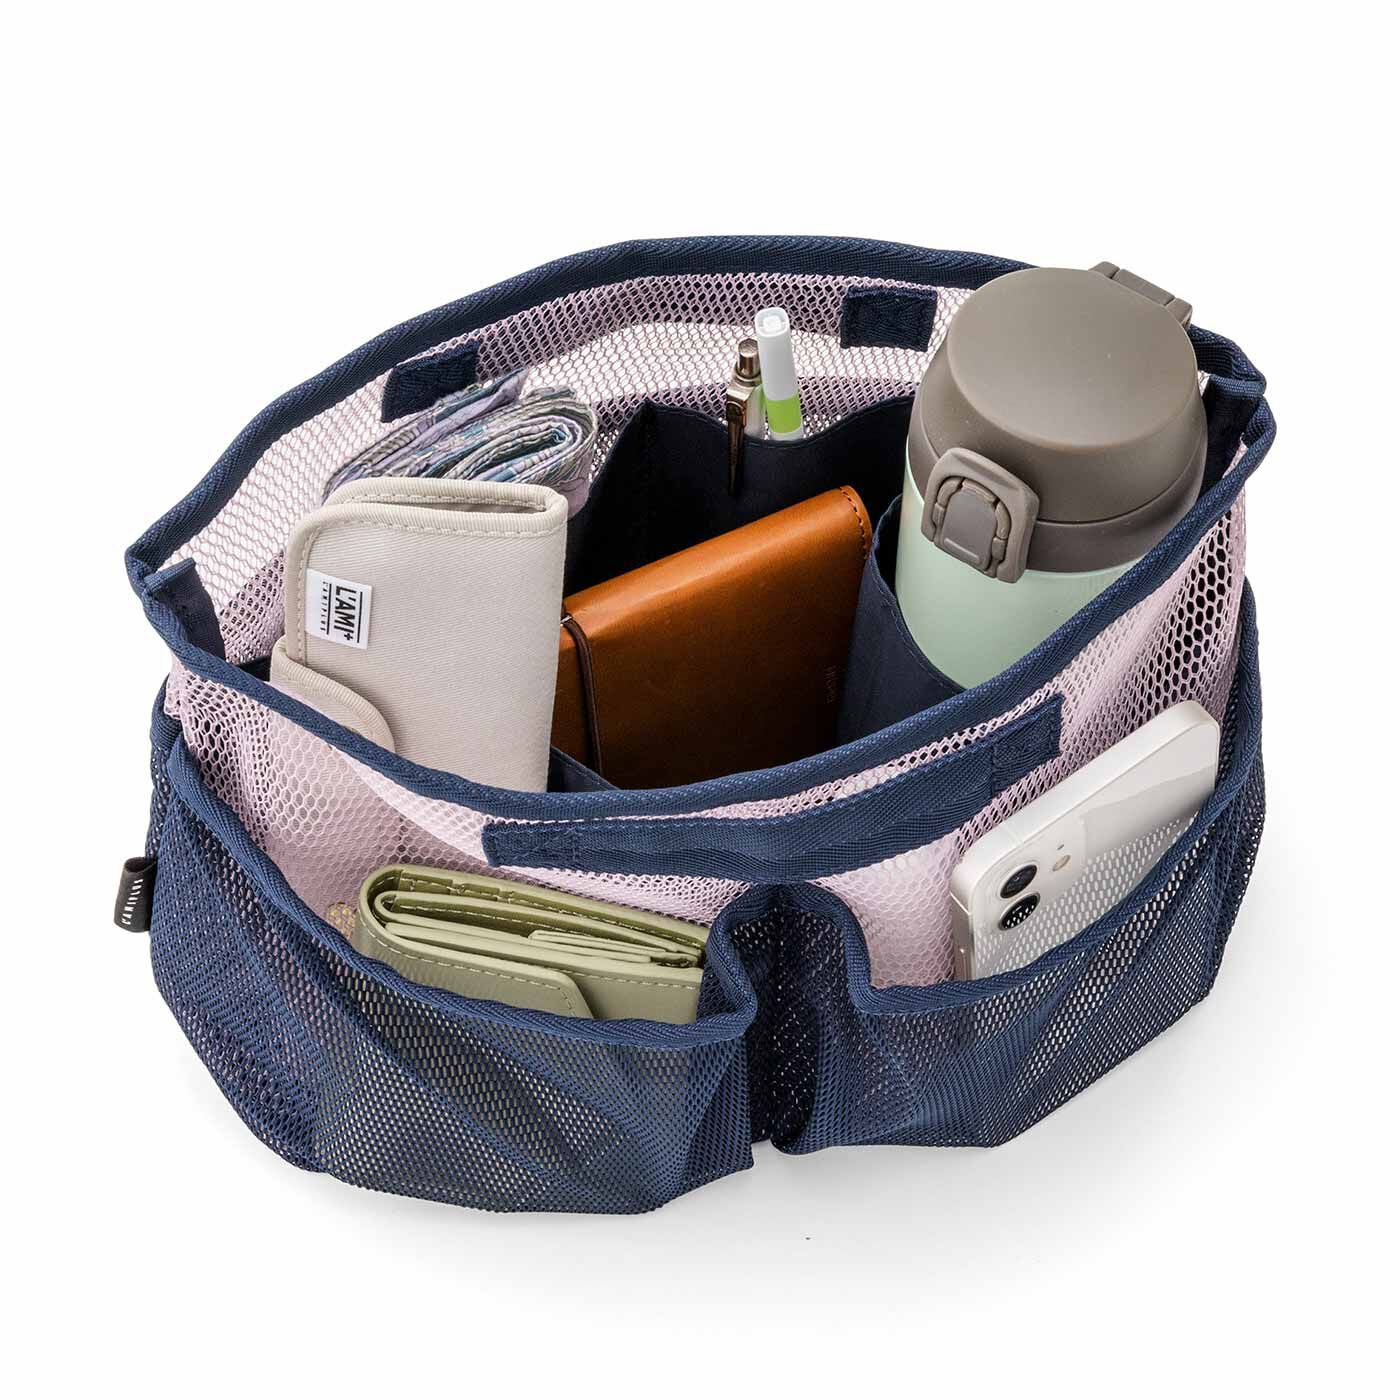 Real Stock|ラミプリュス　やわらかメッシュで荷物を見える化 しっかり自立する 軽やかインナーバッグ|裏にはフラットポケット付き。前にはまちありポケット。